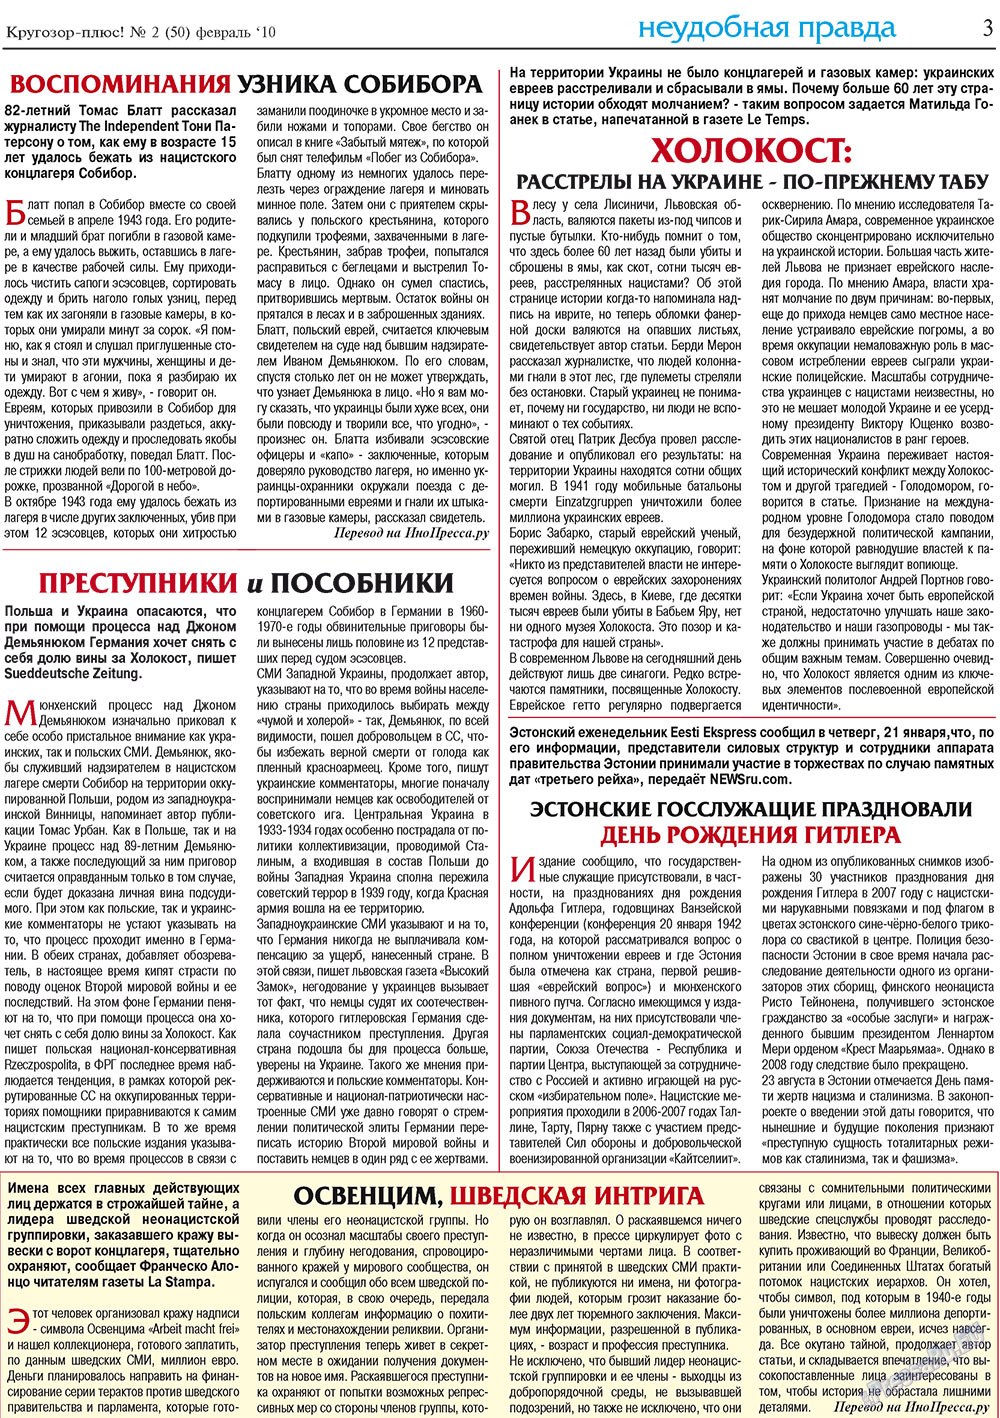 Кругозор плюс!, газета. 2010 №2 стр.3